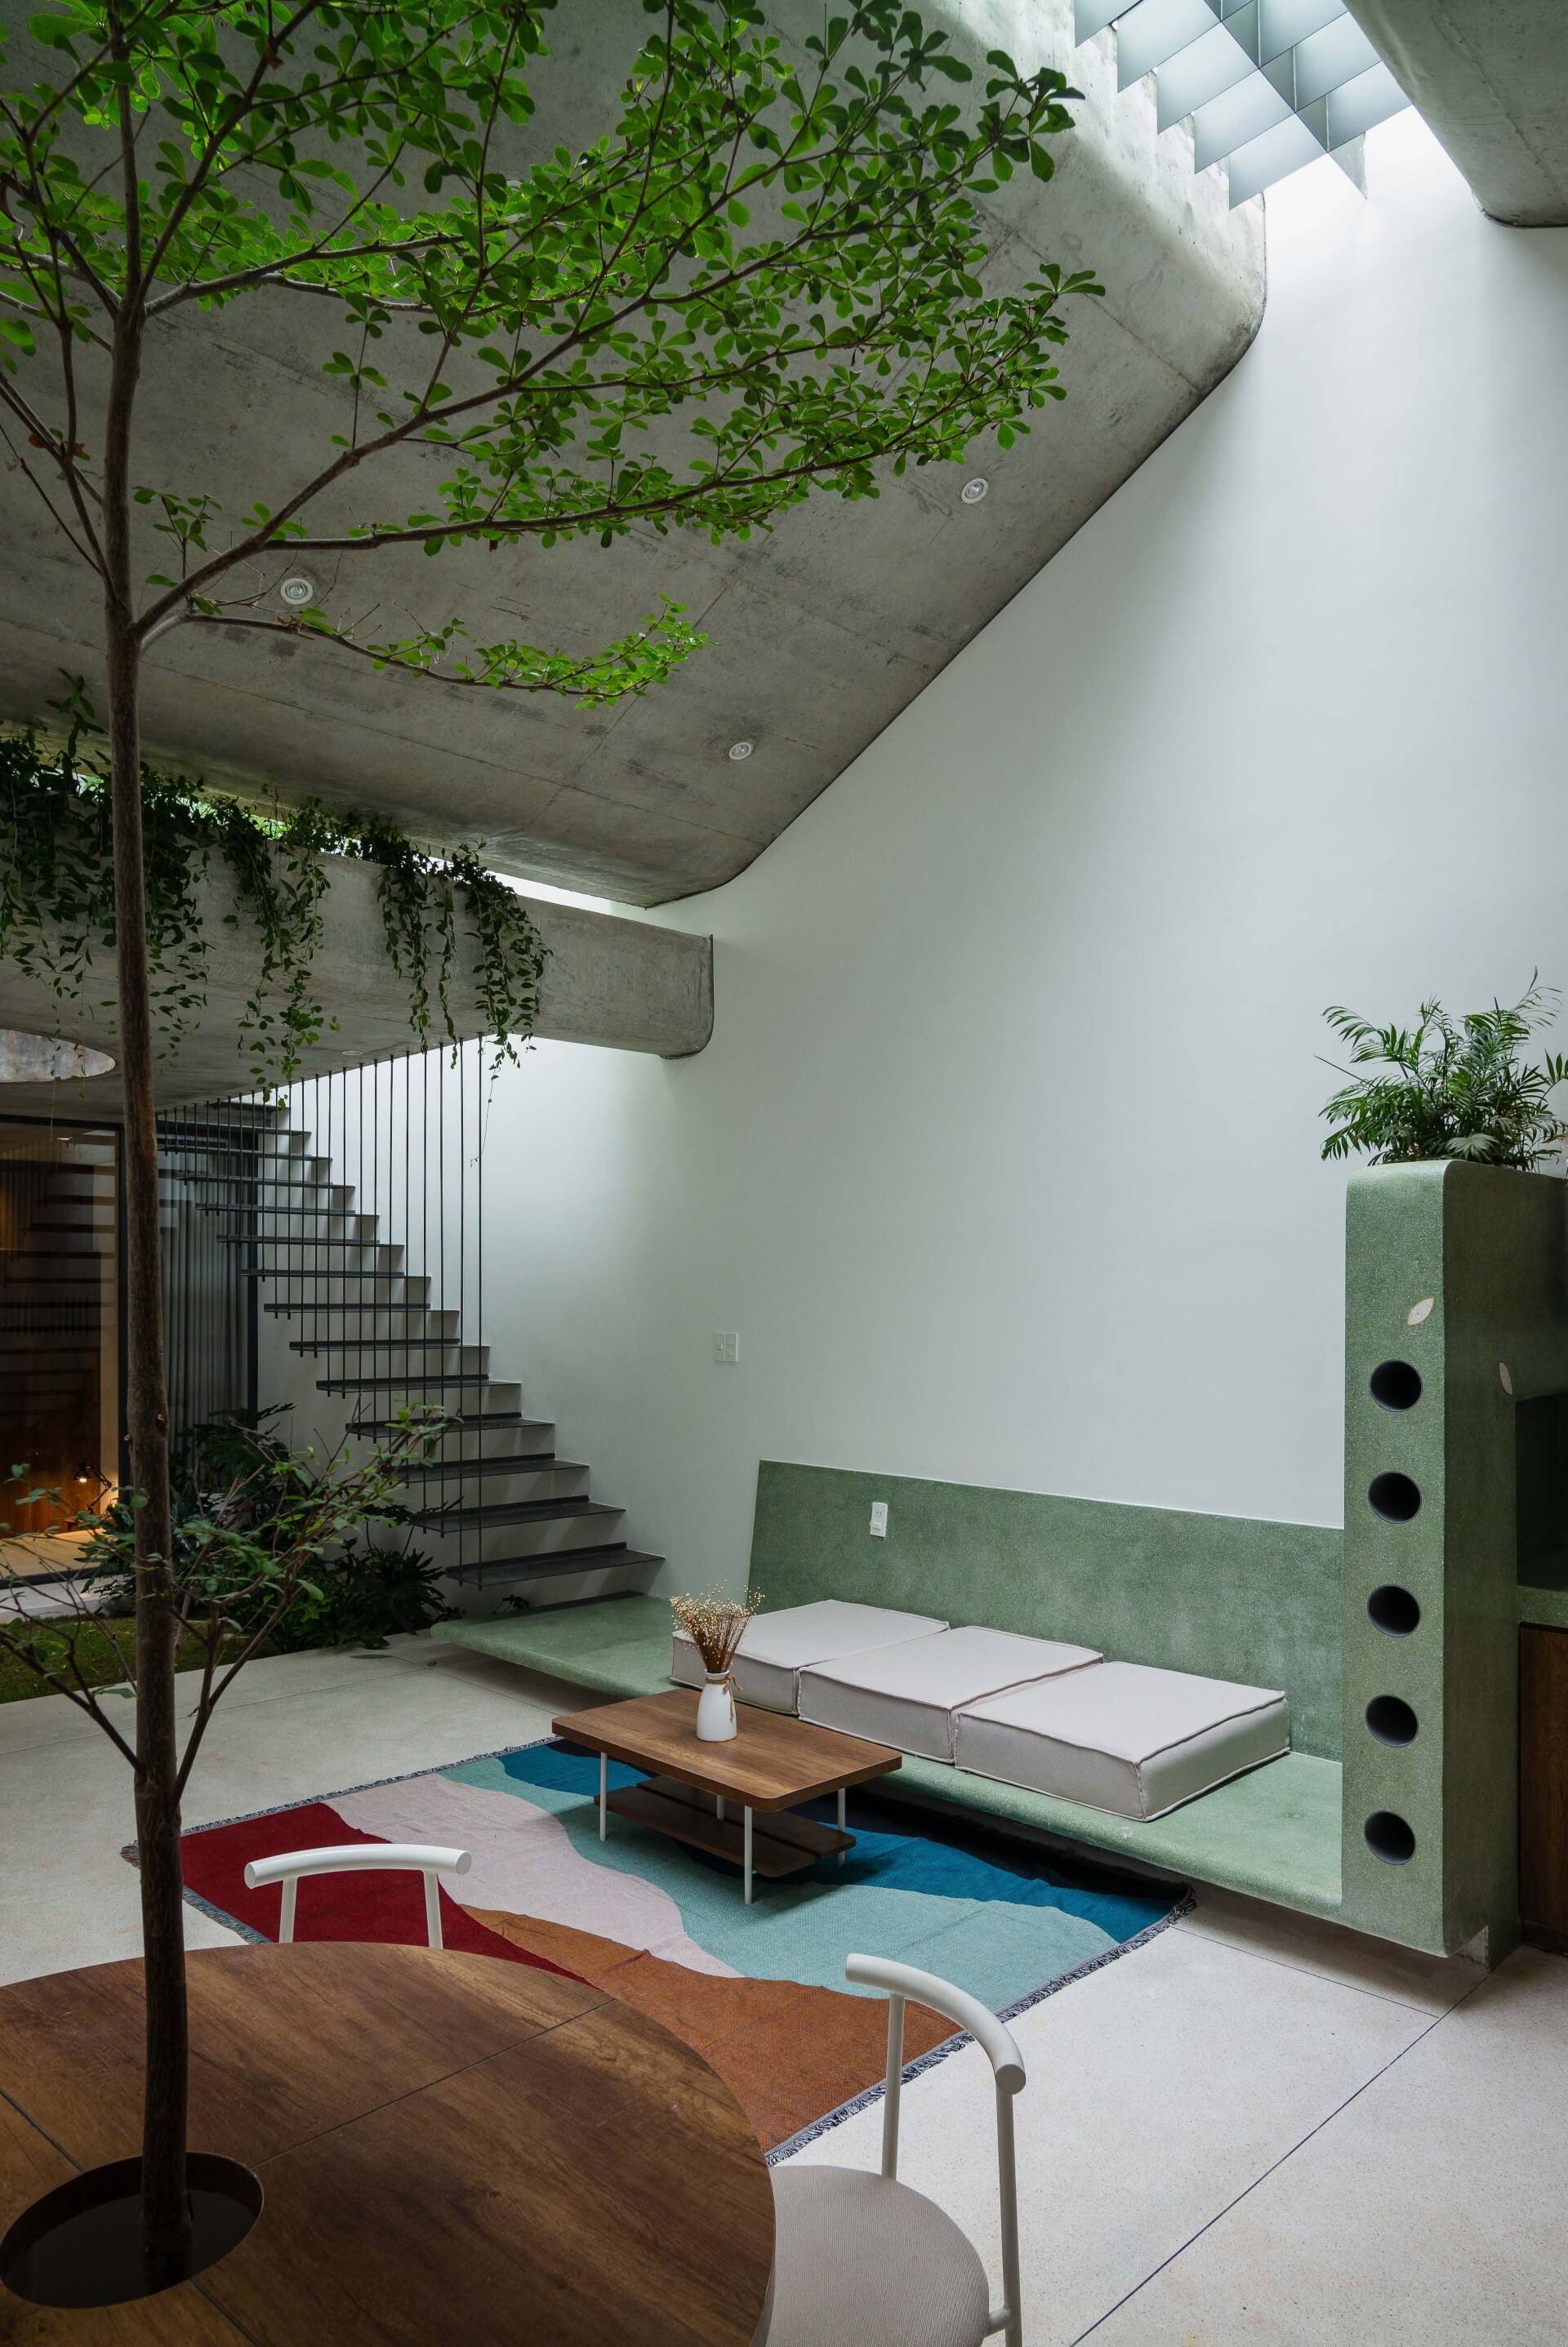 
Phòng khách được bài trí gọn gàng với sự kết hợp hài hòa của màu gỗ với các mảng xanh, đỏ, trắng&nbsp;
